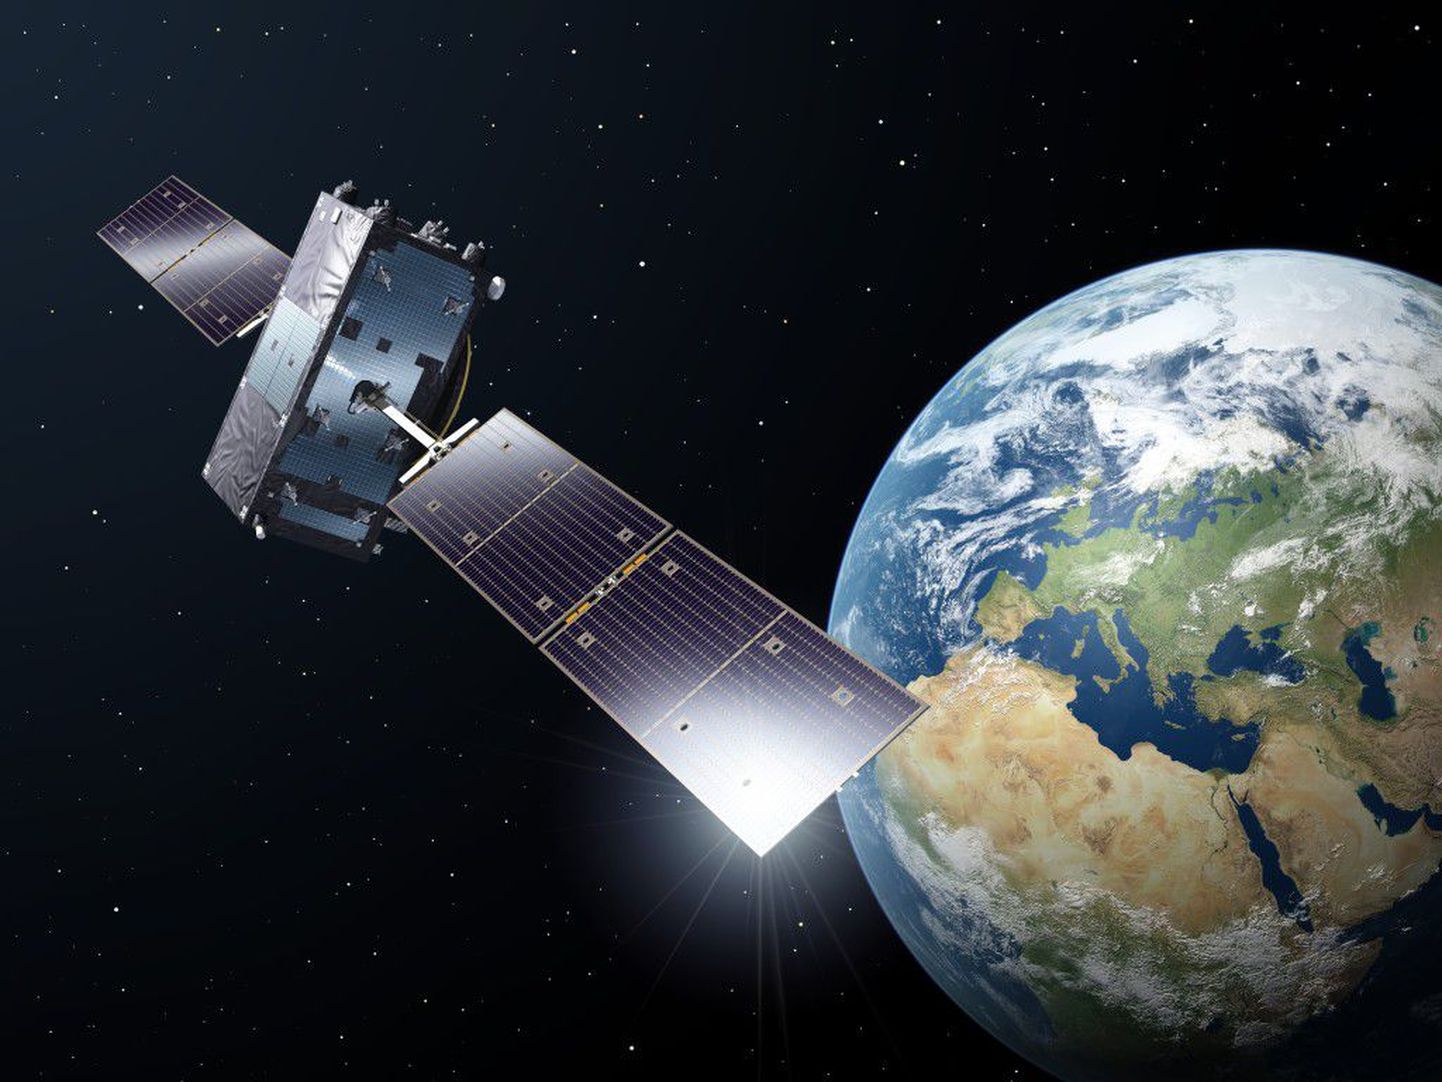 Kui satelliidud on seni pakkunud kallist kommunikatsiooni suurtele meediakorporatsioonidele, siis areng näitab, et satelliiduteenused jõuavad aina enam ka tavatarbijale kättesaadavaks.